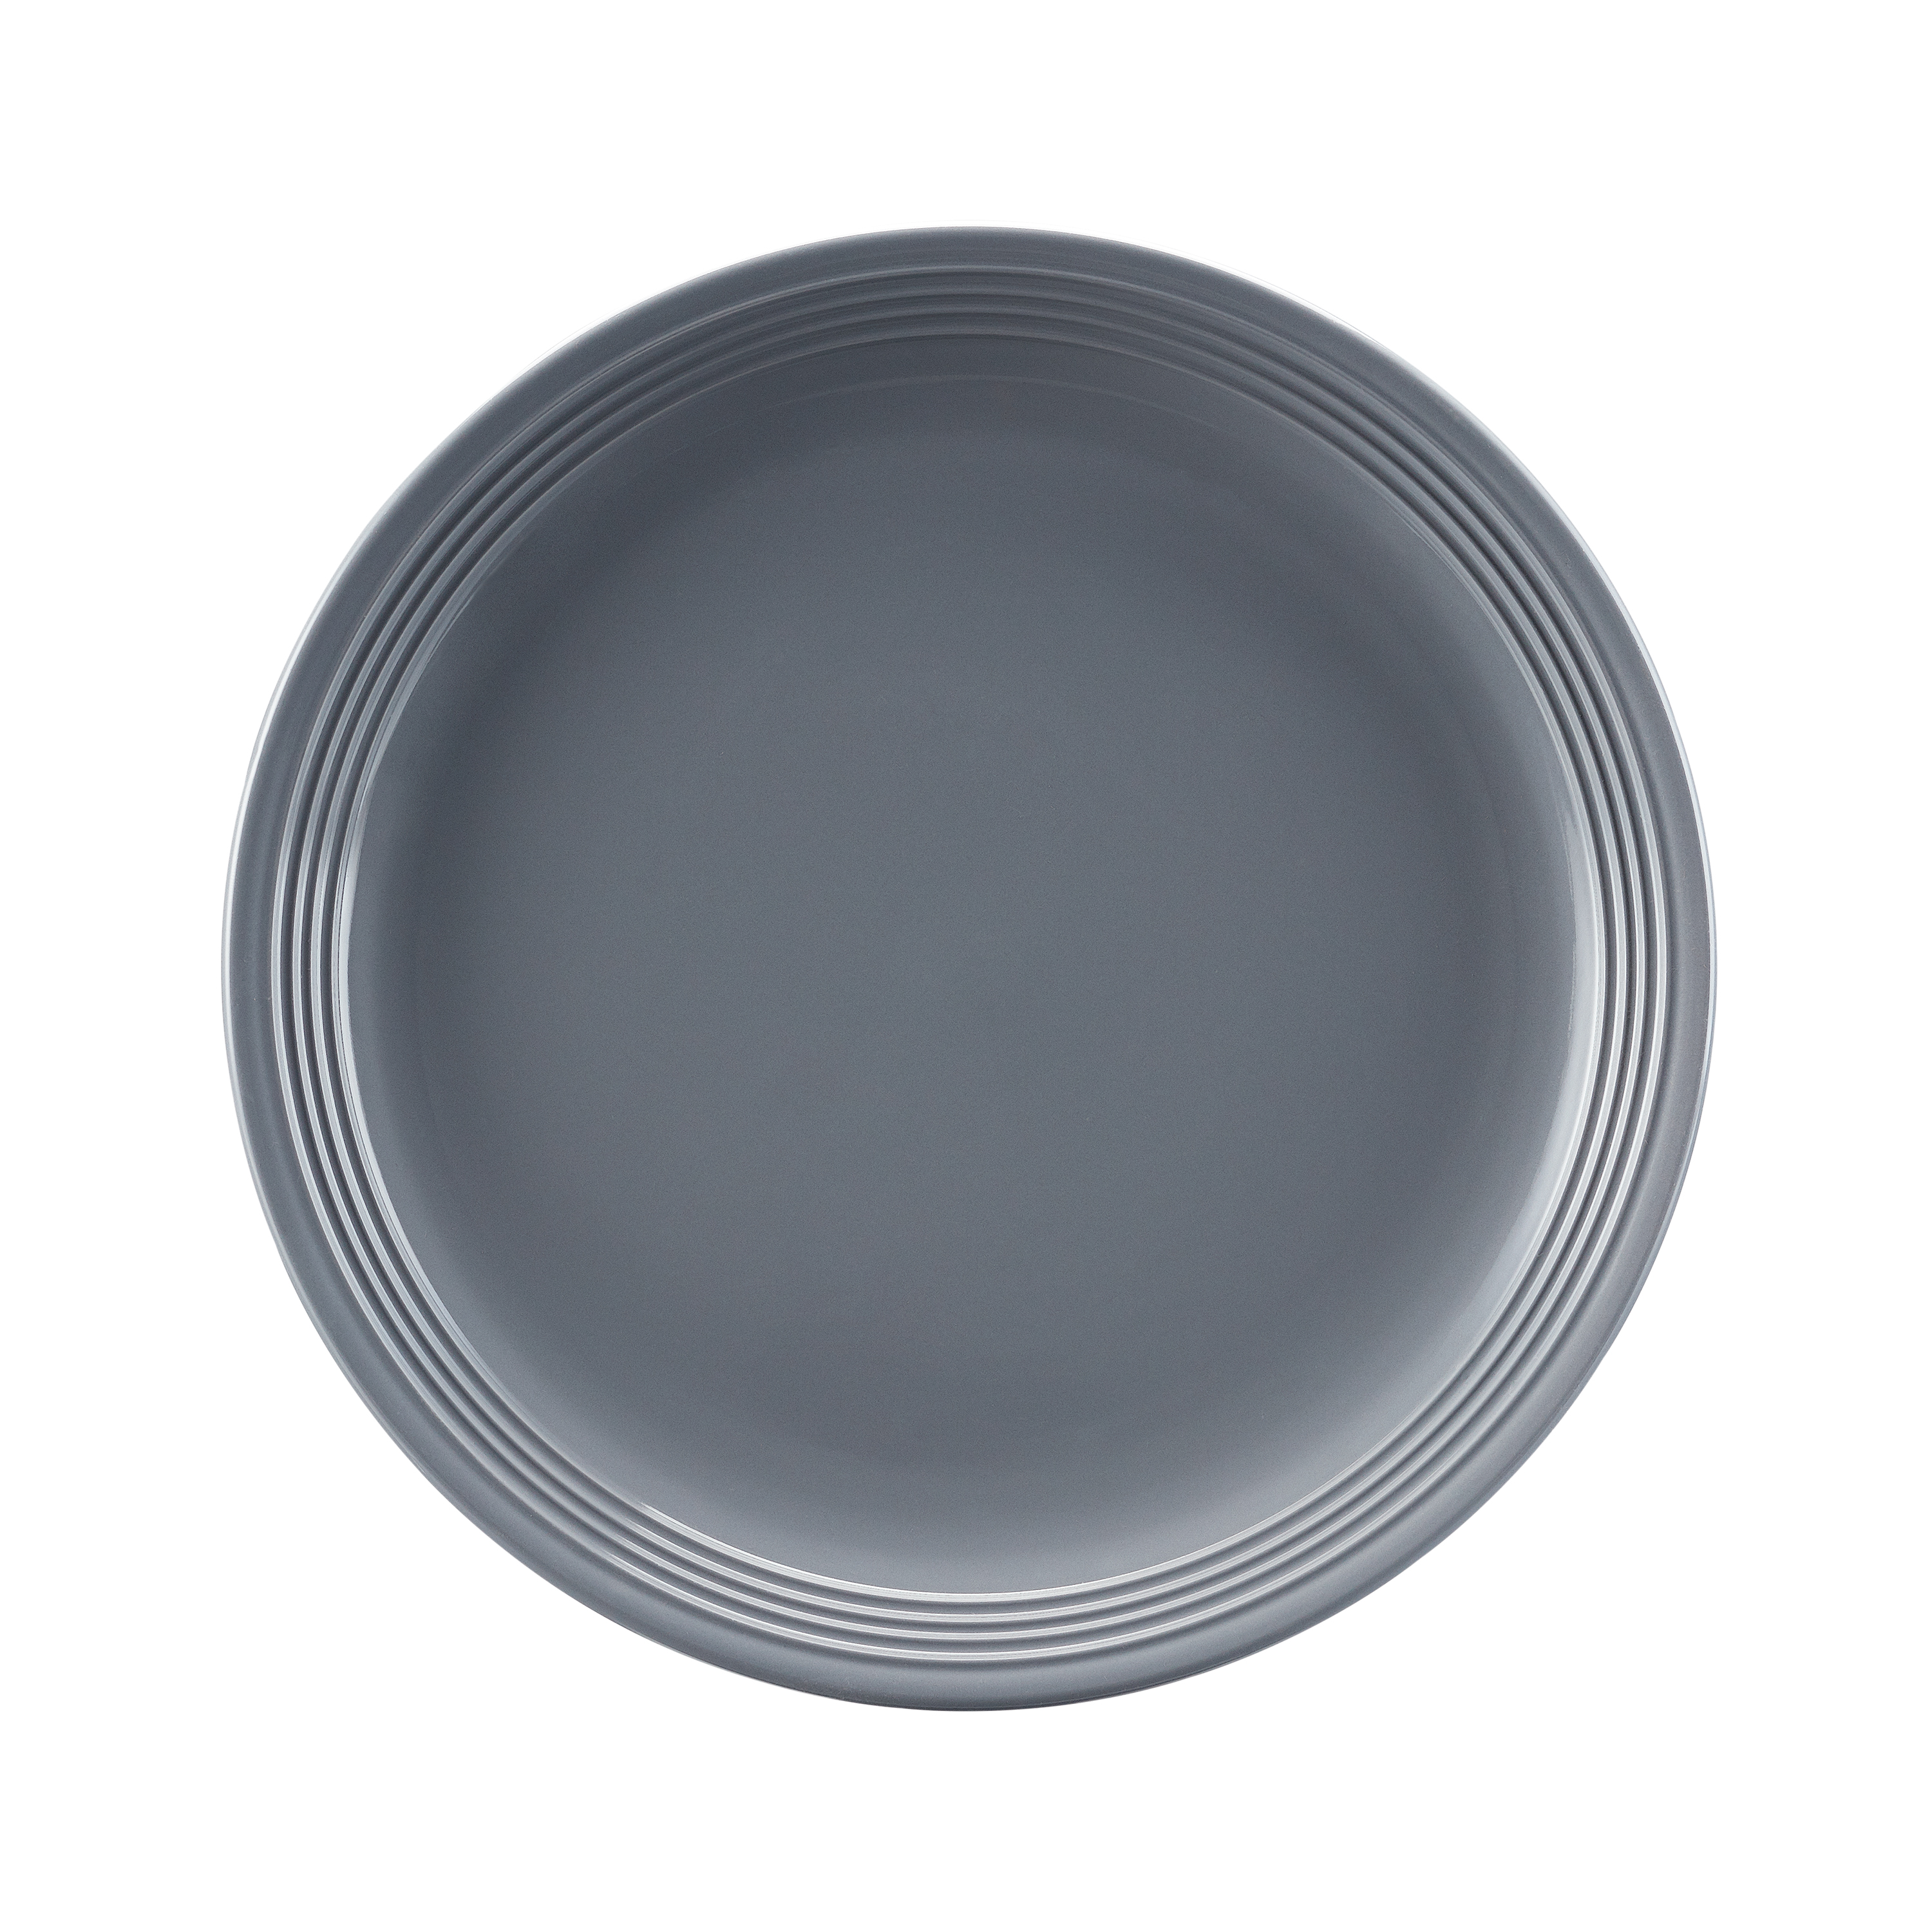 Mainstays Chiara 16-Piece Stoneware Gray Dinnerware Set - image 5 of 9